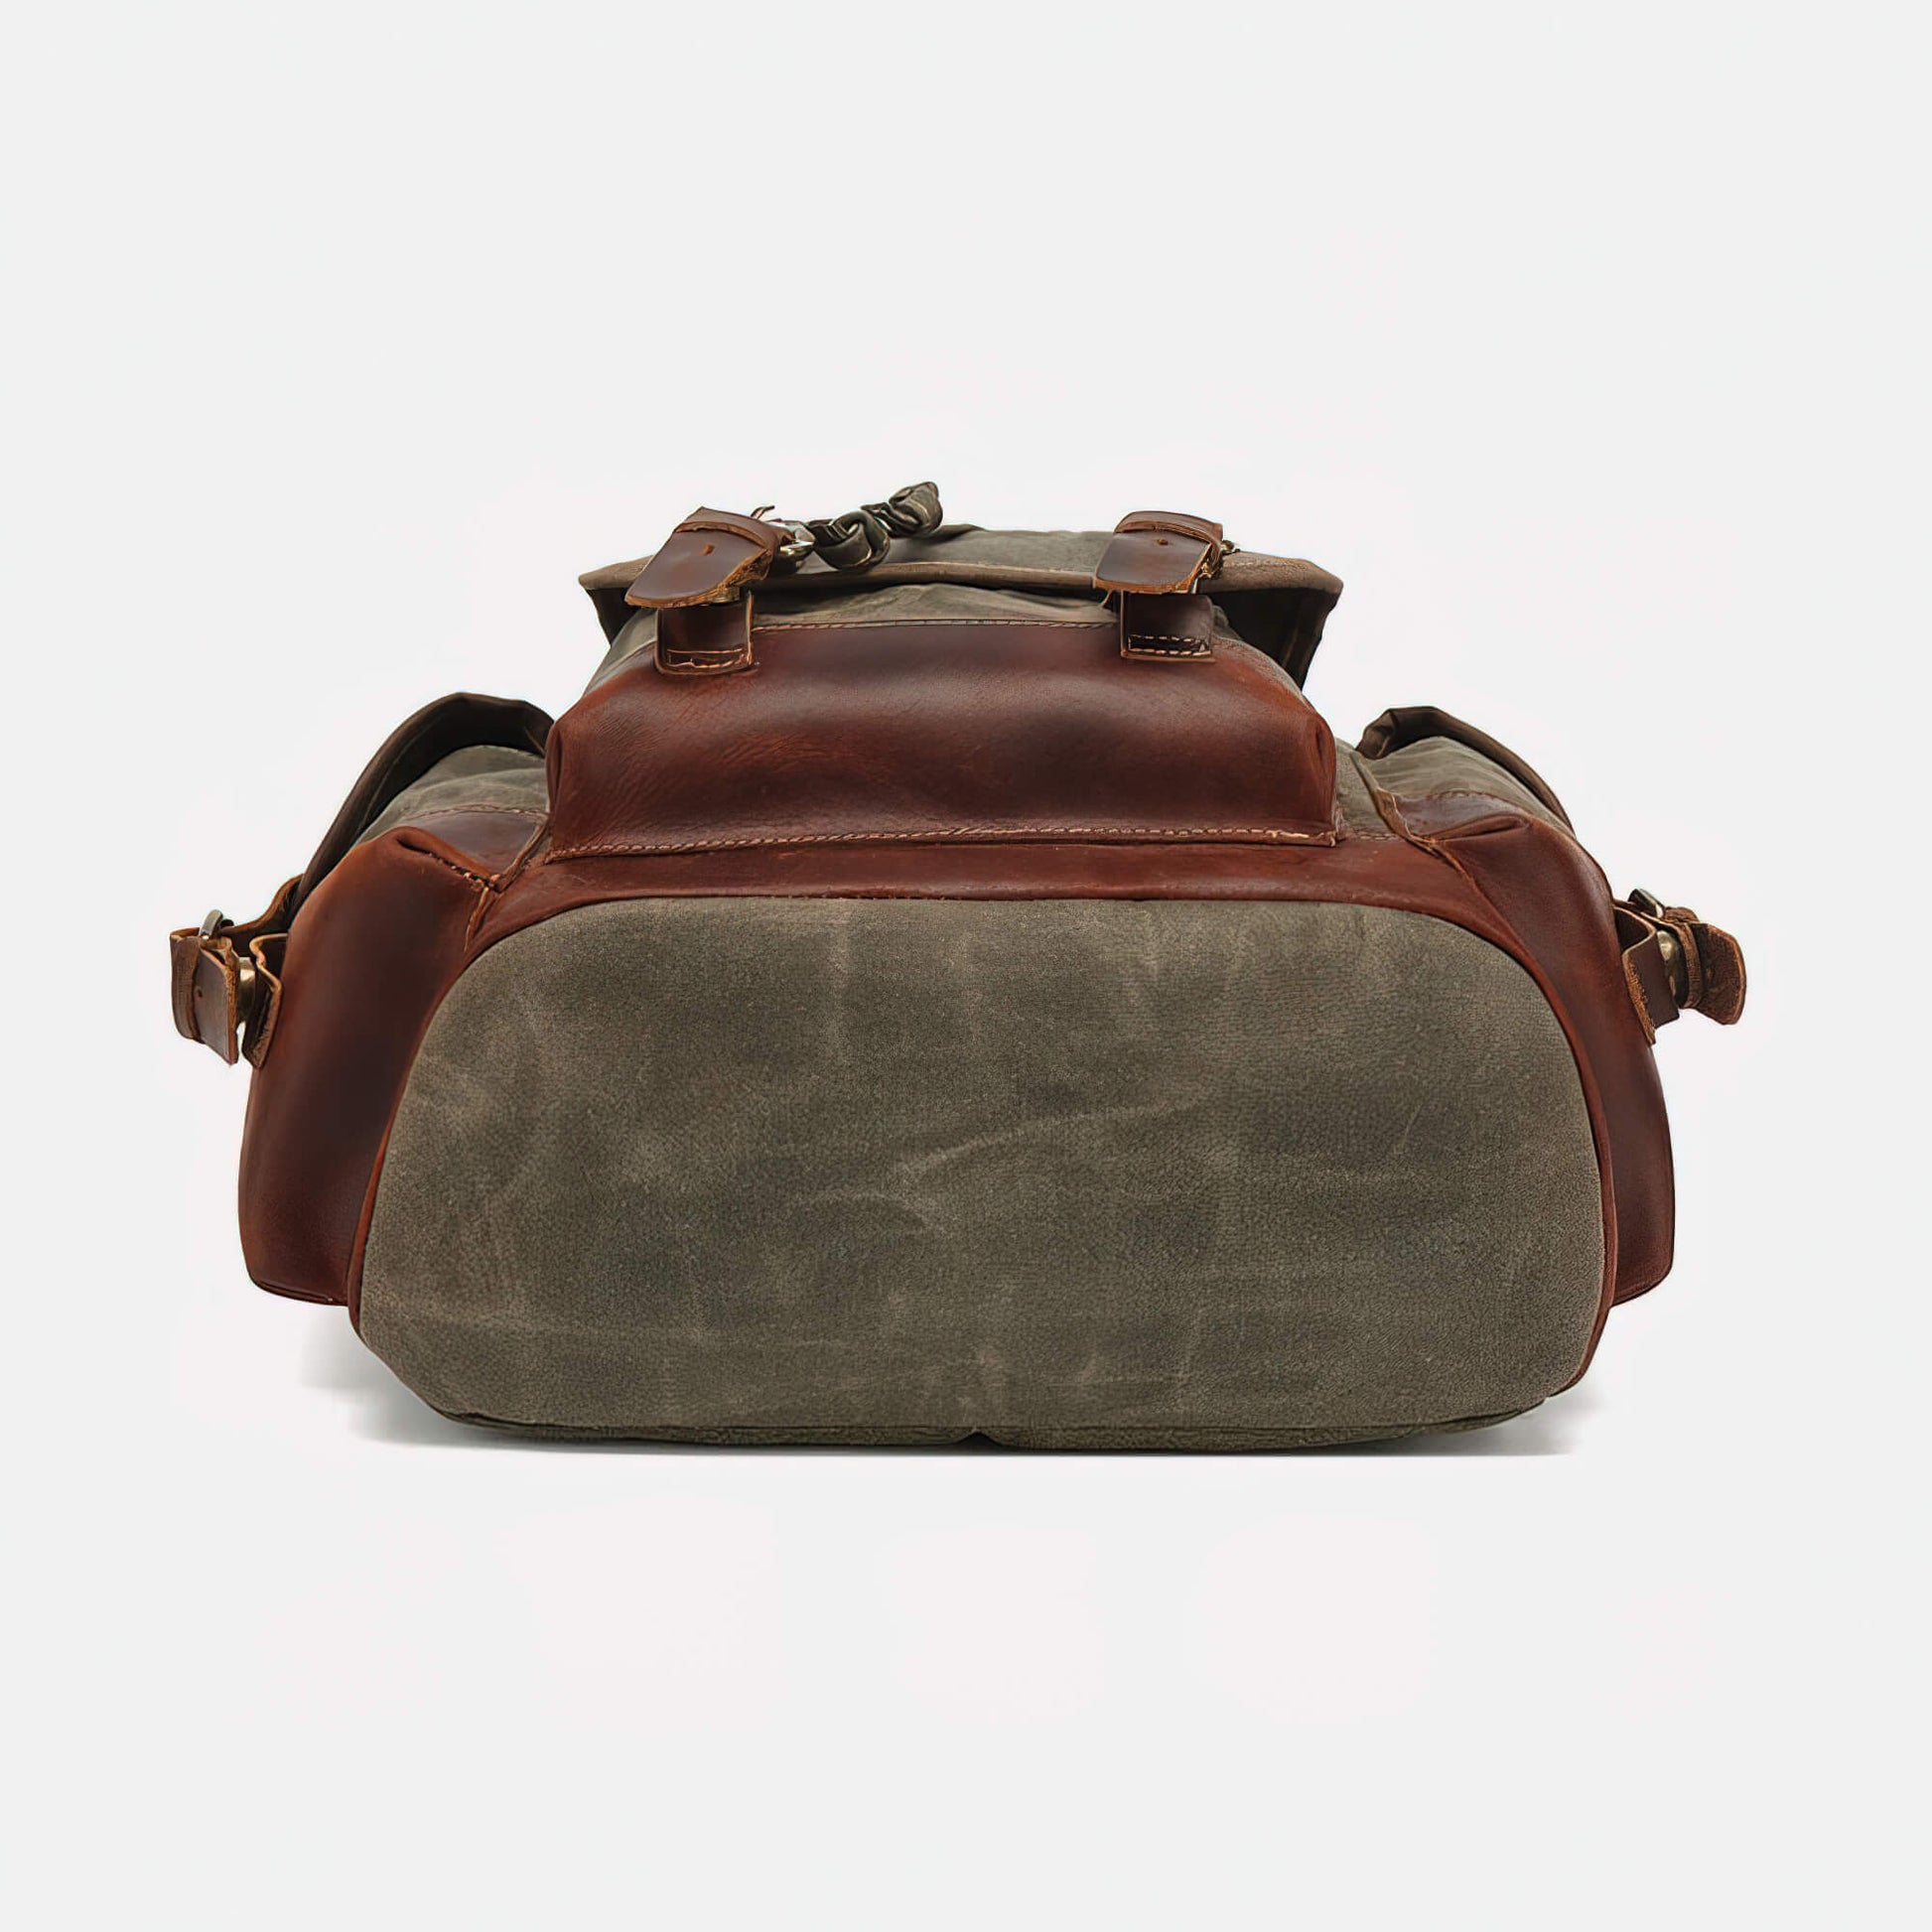 Large Capacity Shoulder Bag Leather Canvas Bag - Canvas Bag Leather Bag